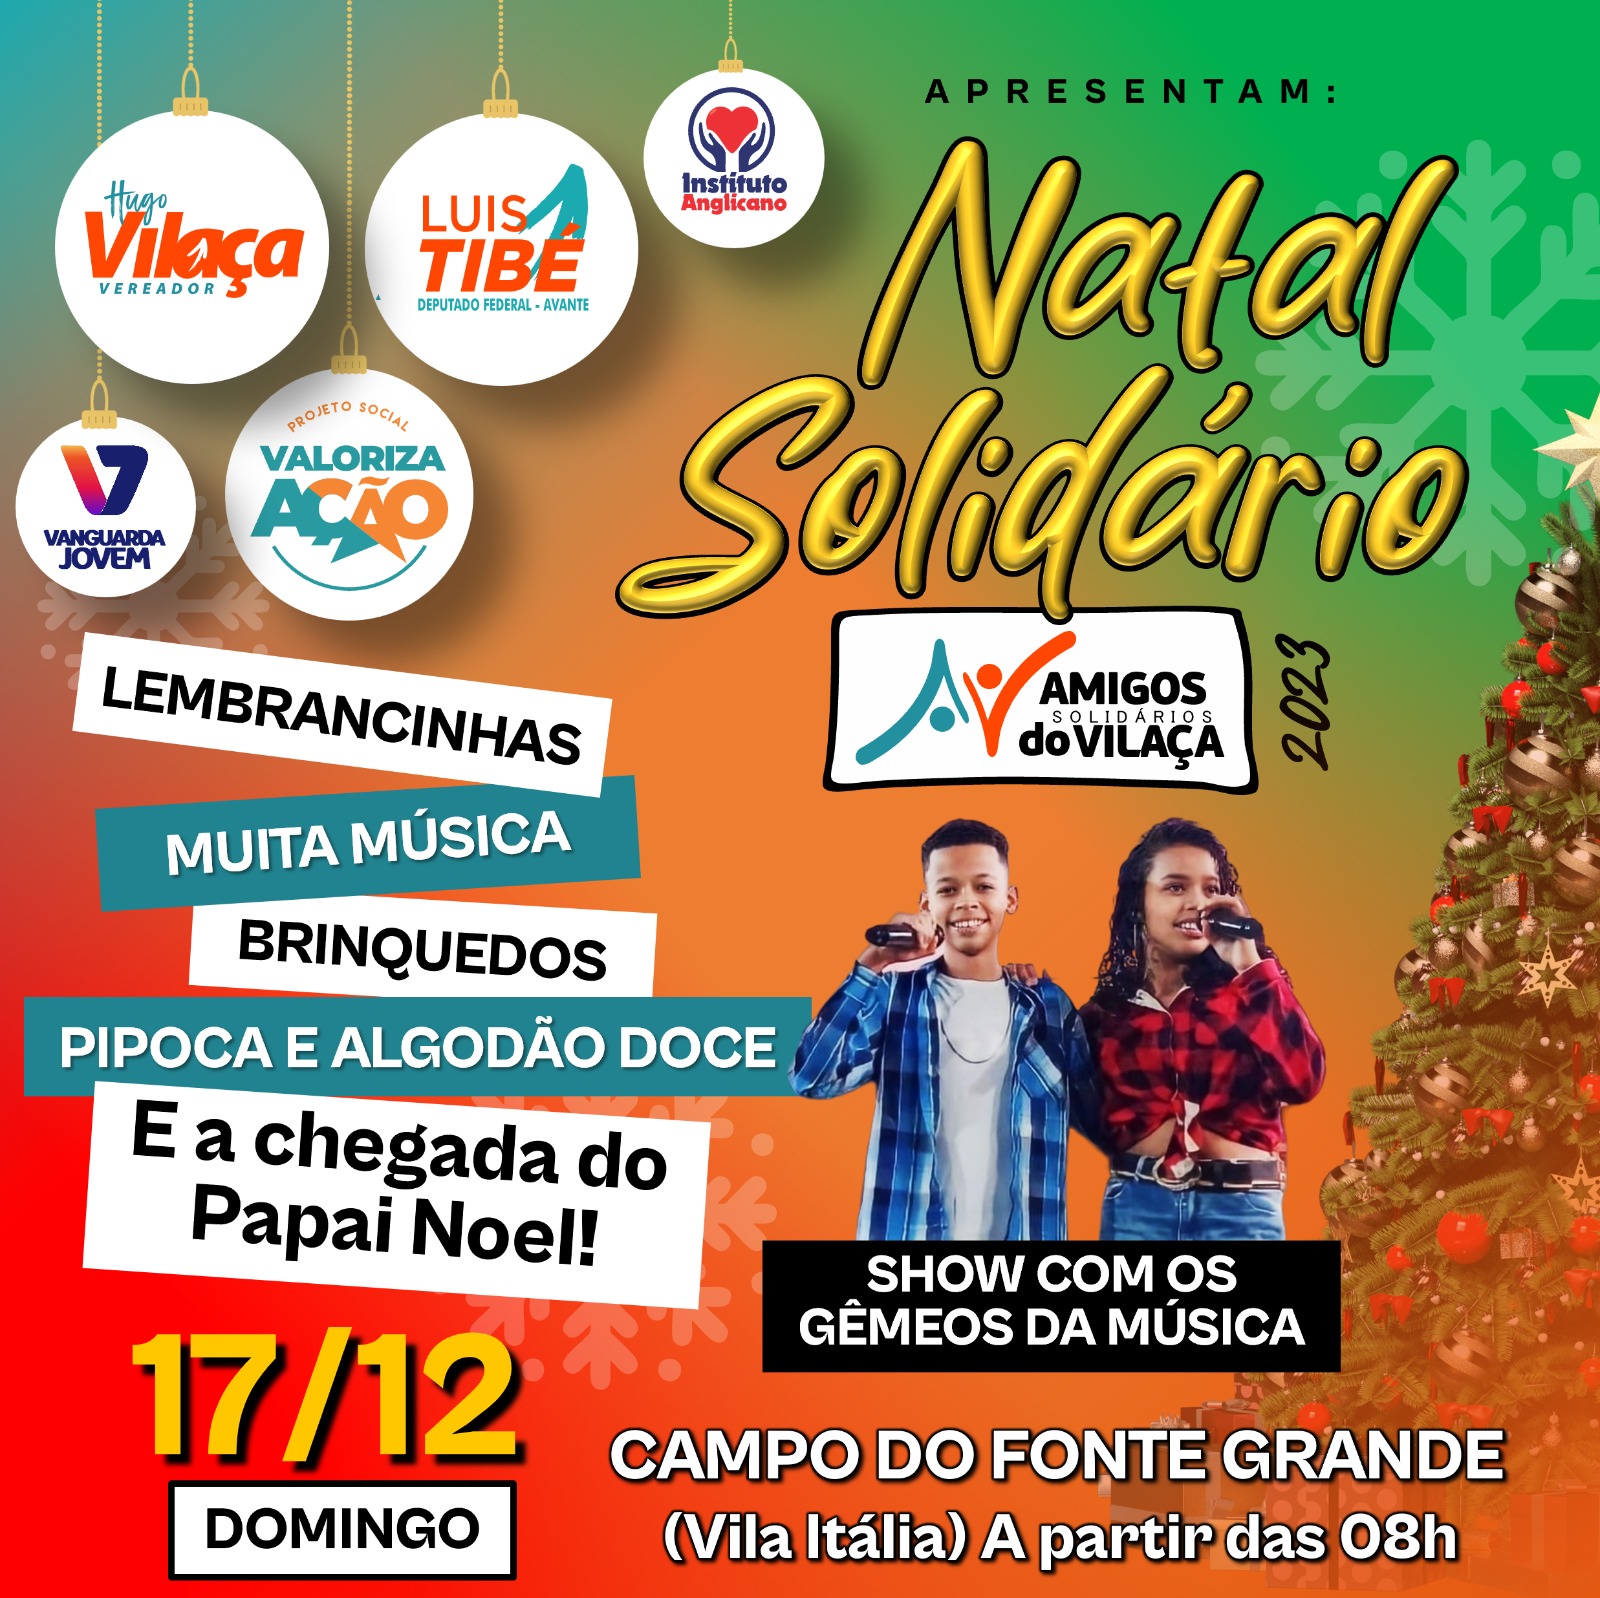 Natal Solidário Amigos do Vilaça na Vila Itália é domingo (17/12)